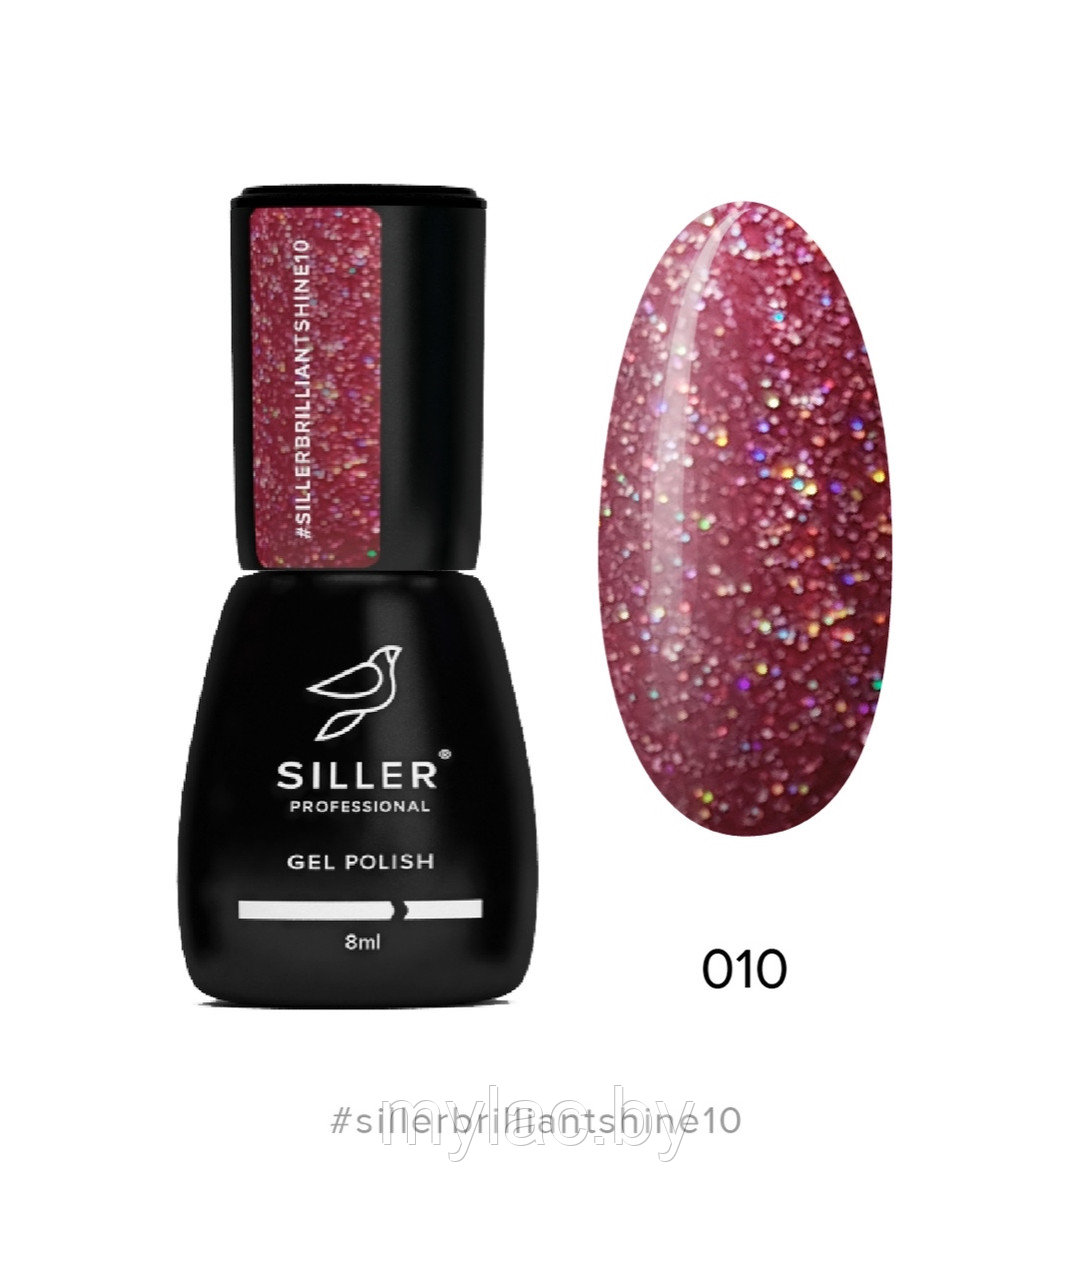 Гель-лак Siller Brilliant Shine №10 (бордовый с блестками), 8мл